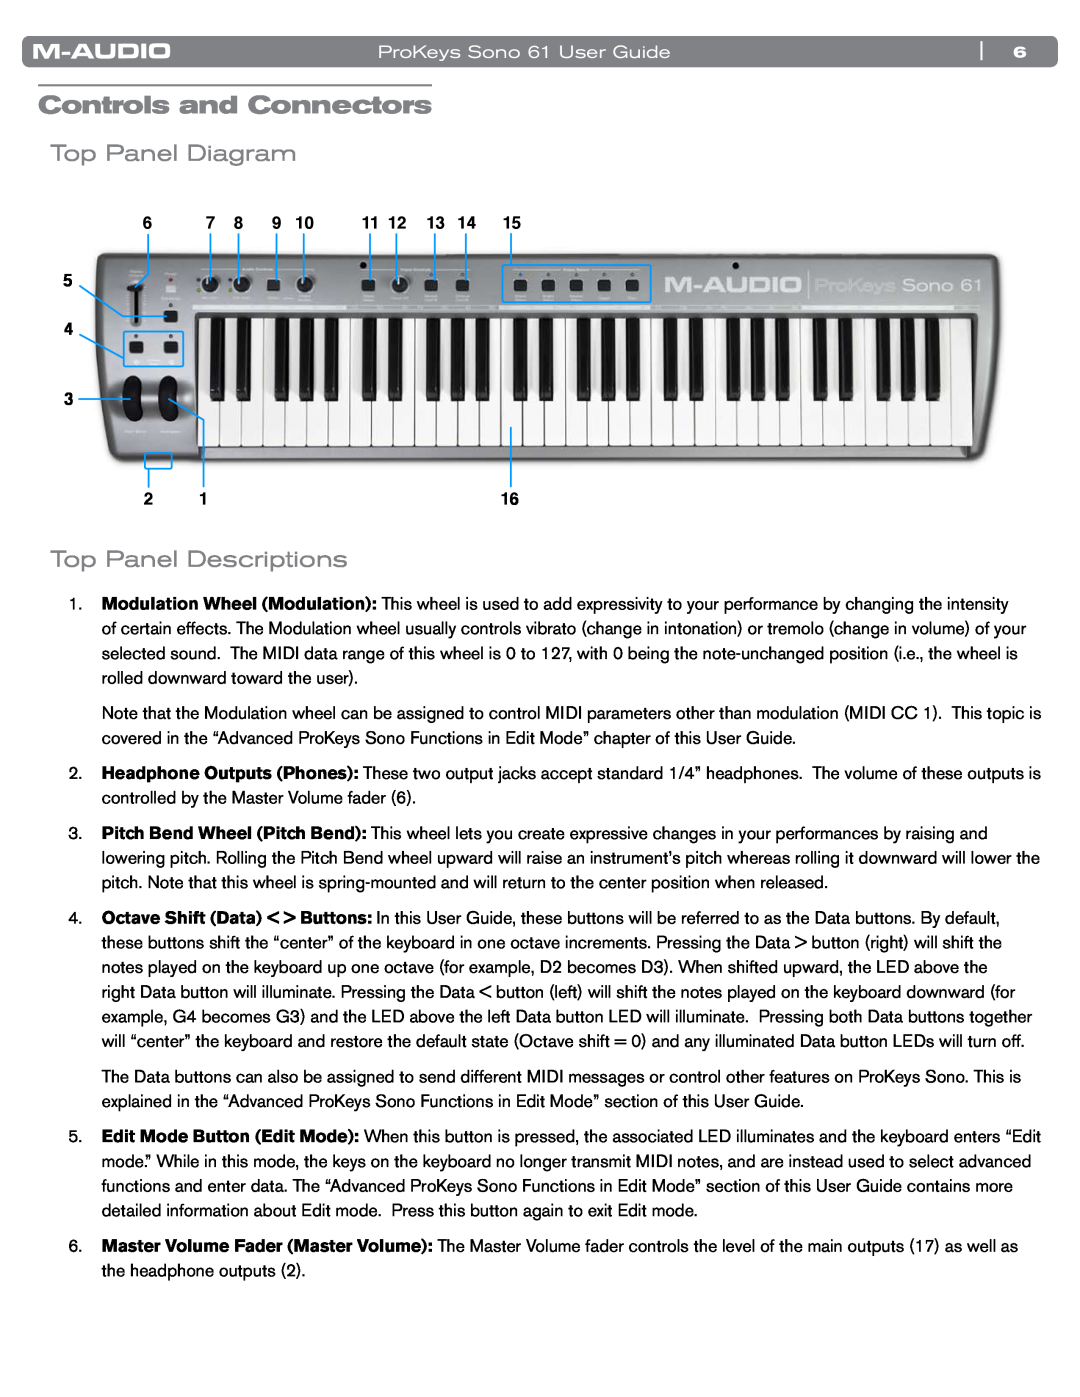 M-Audio SONO 61 manual Controls and Connectors, Top Panel Diagram, Top Panel Descriptions, ProKeys Sono 61 User Guide 